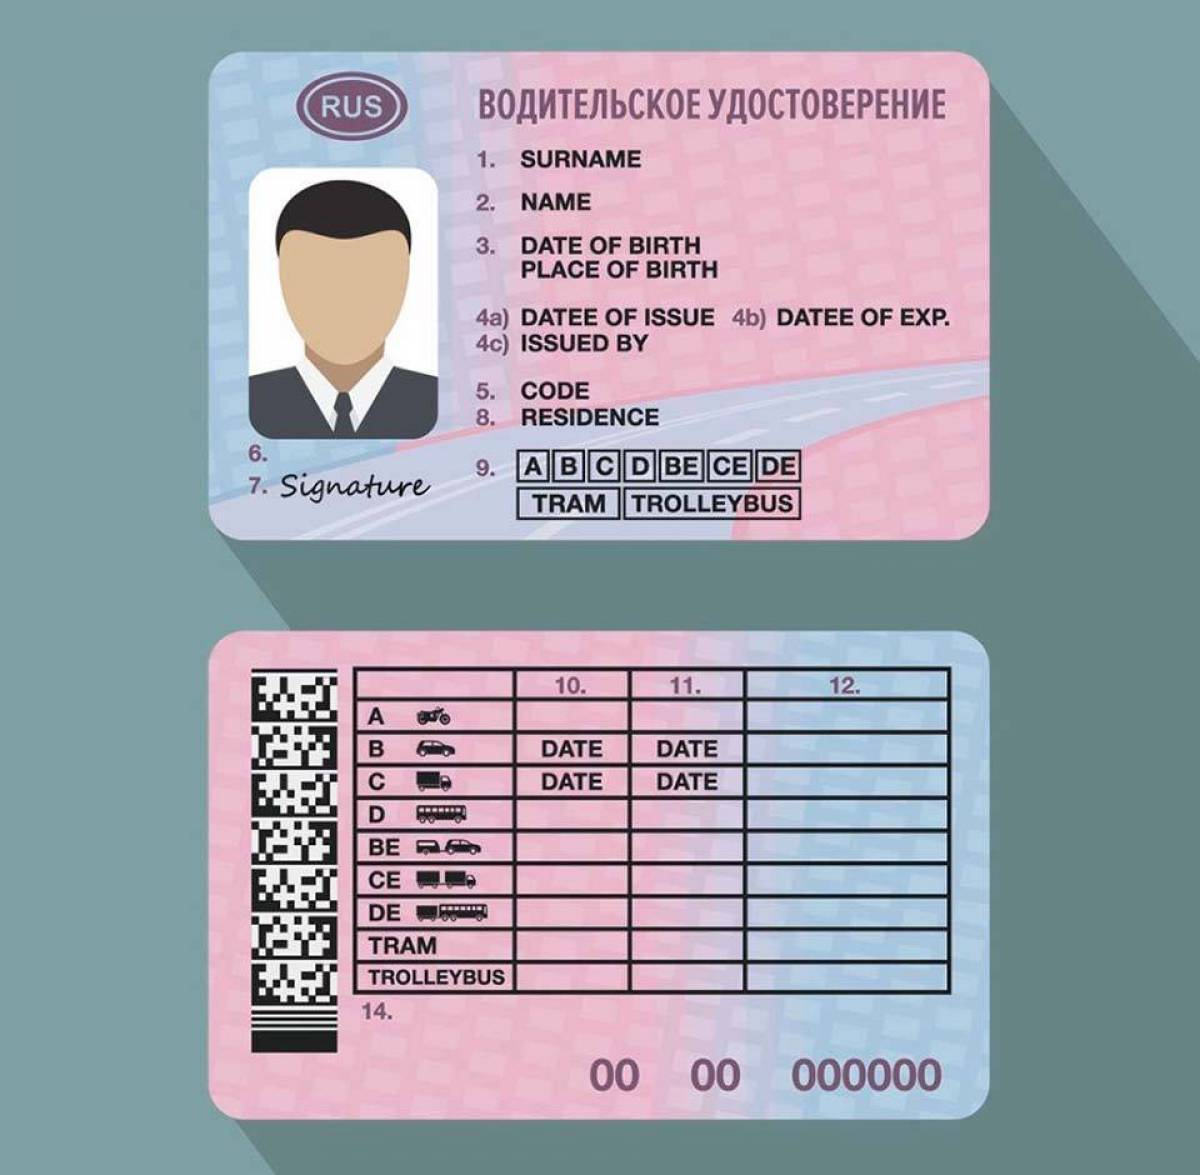 Правила получения водительских прав с 1 апреля. Бланки водительского удостоверения.